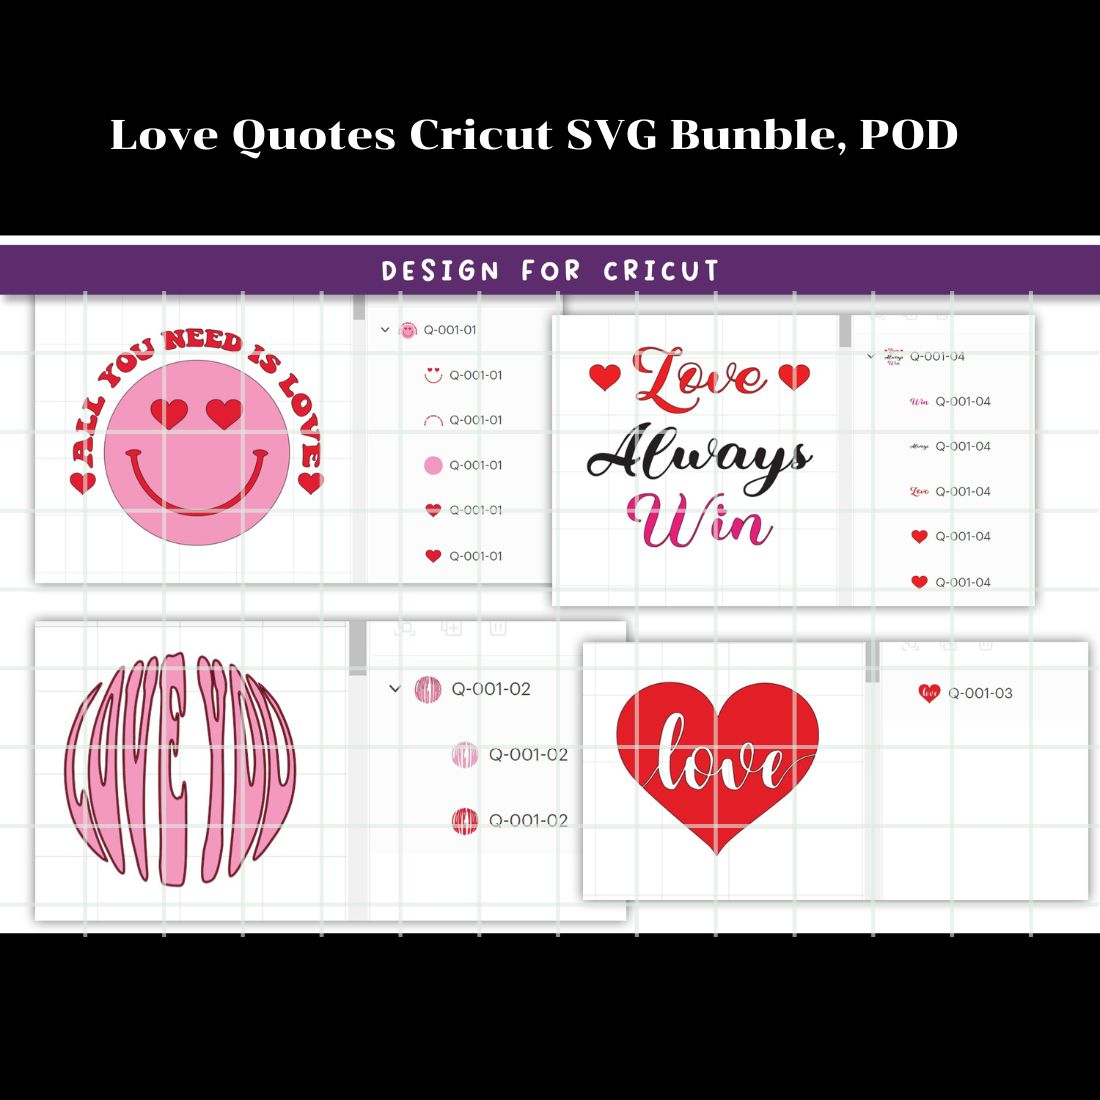 Love Quotes Cricut SVG Bundle, POD cover image.